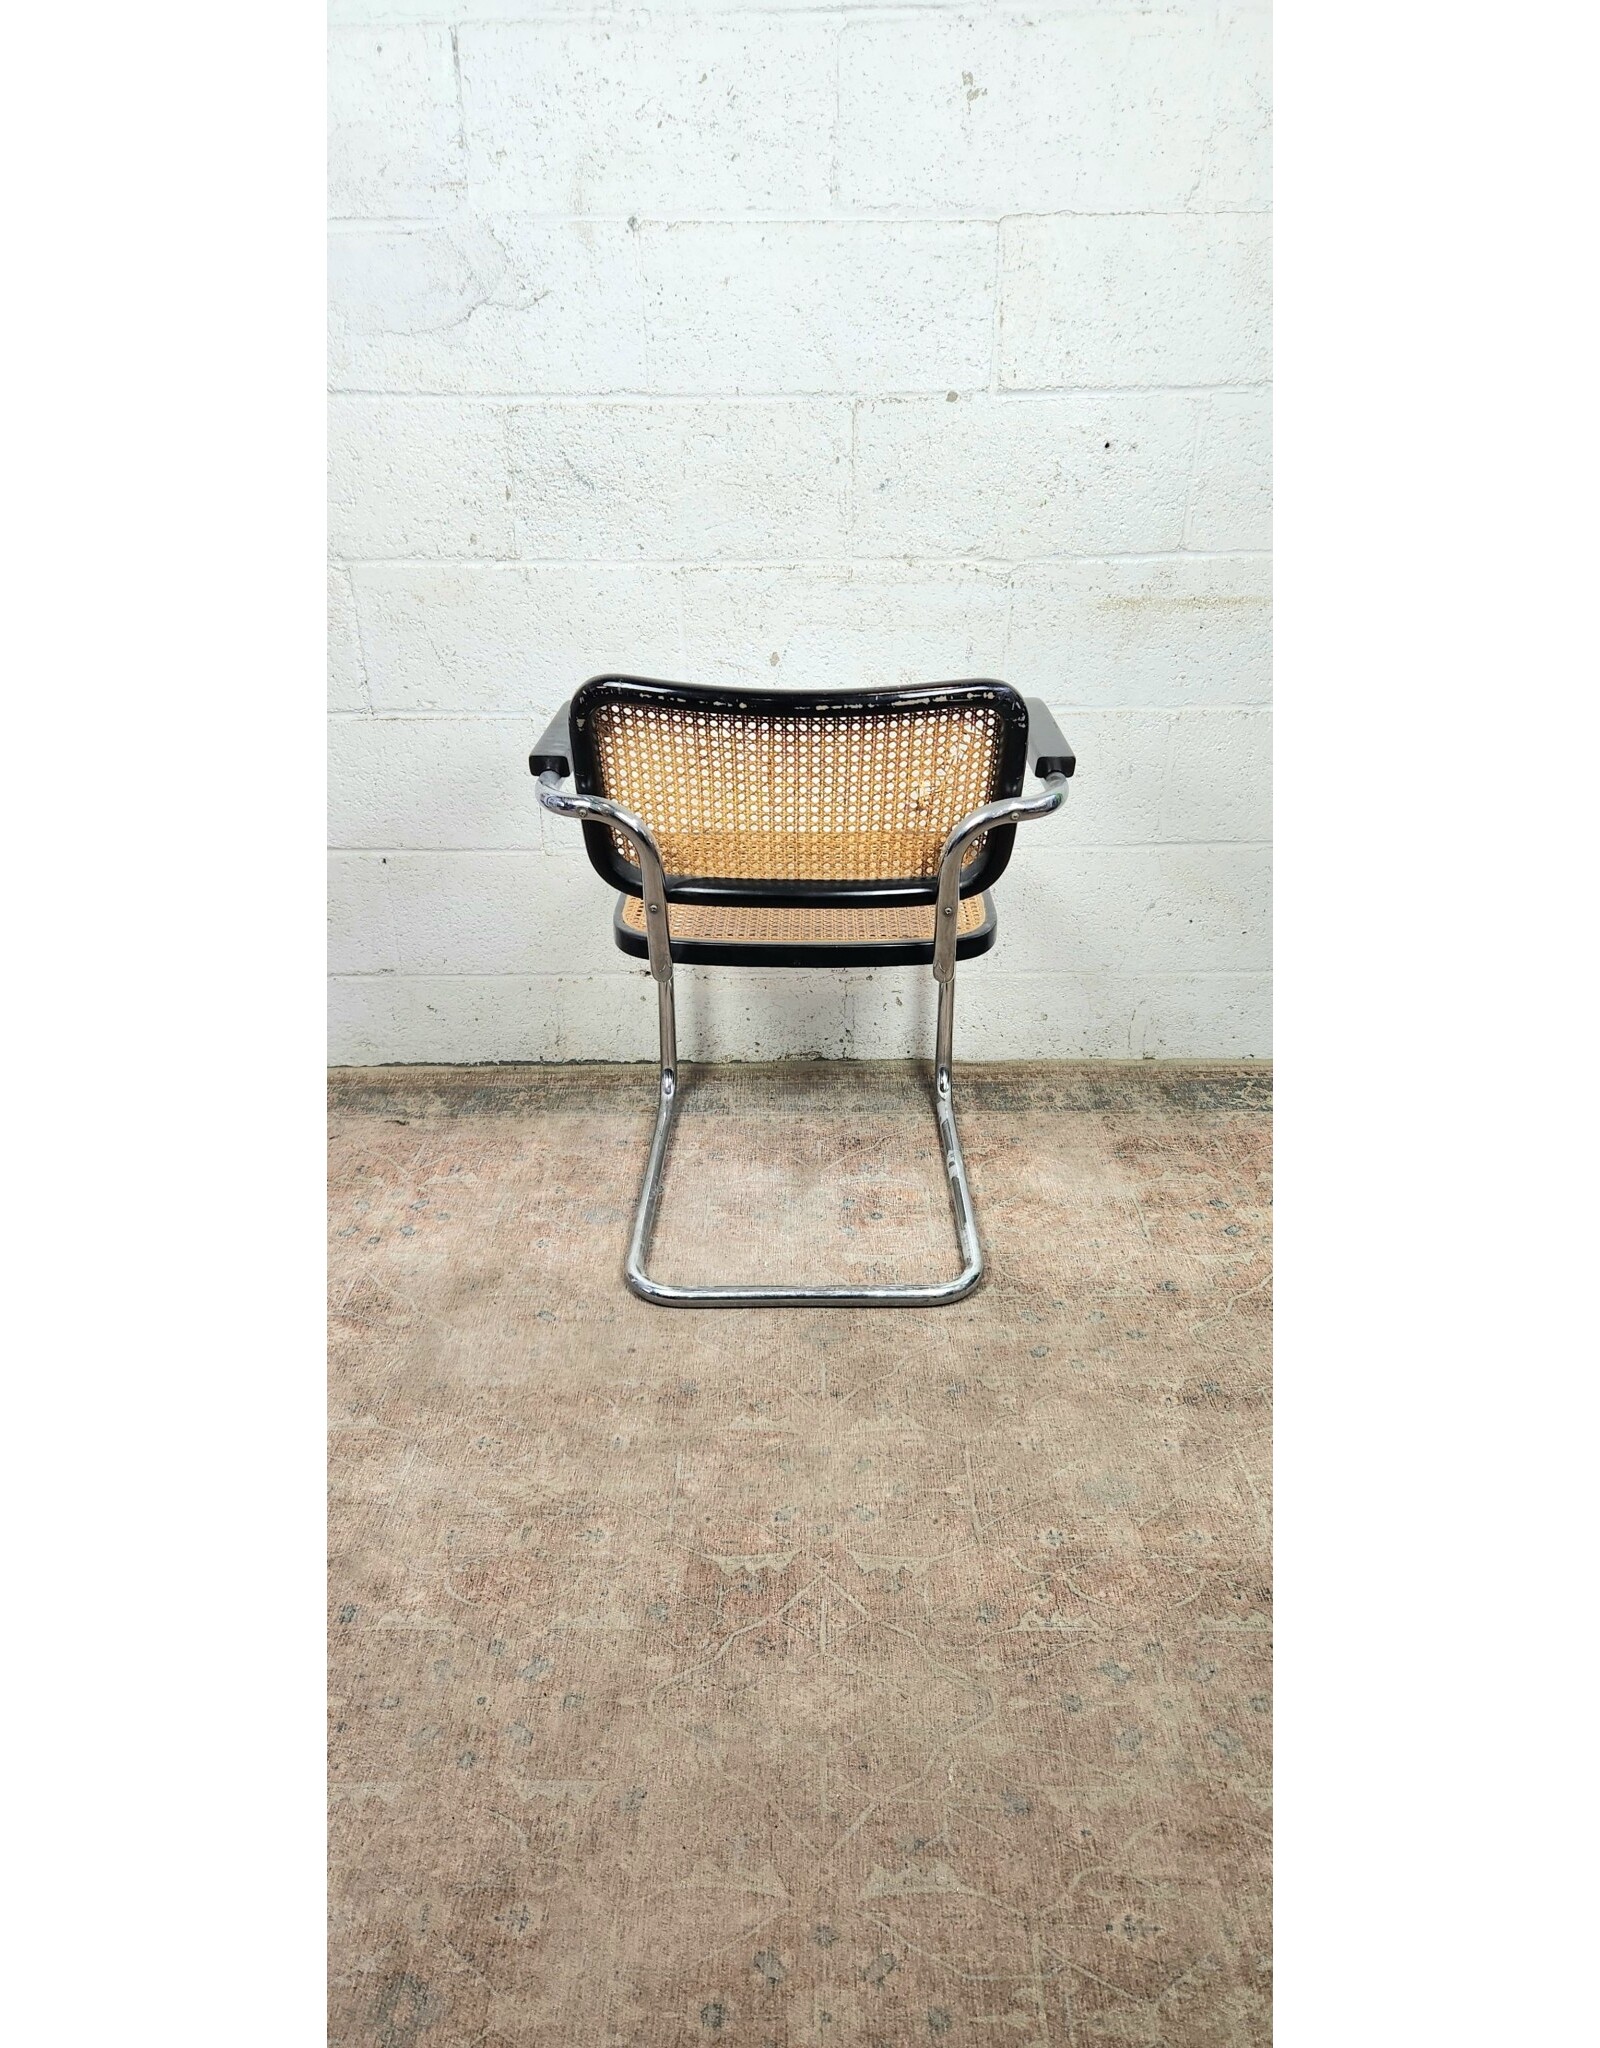 Vintage Black Thonet Arm Chair - Fair Condition